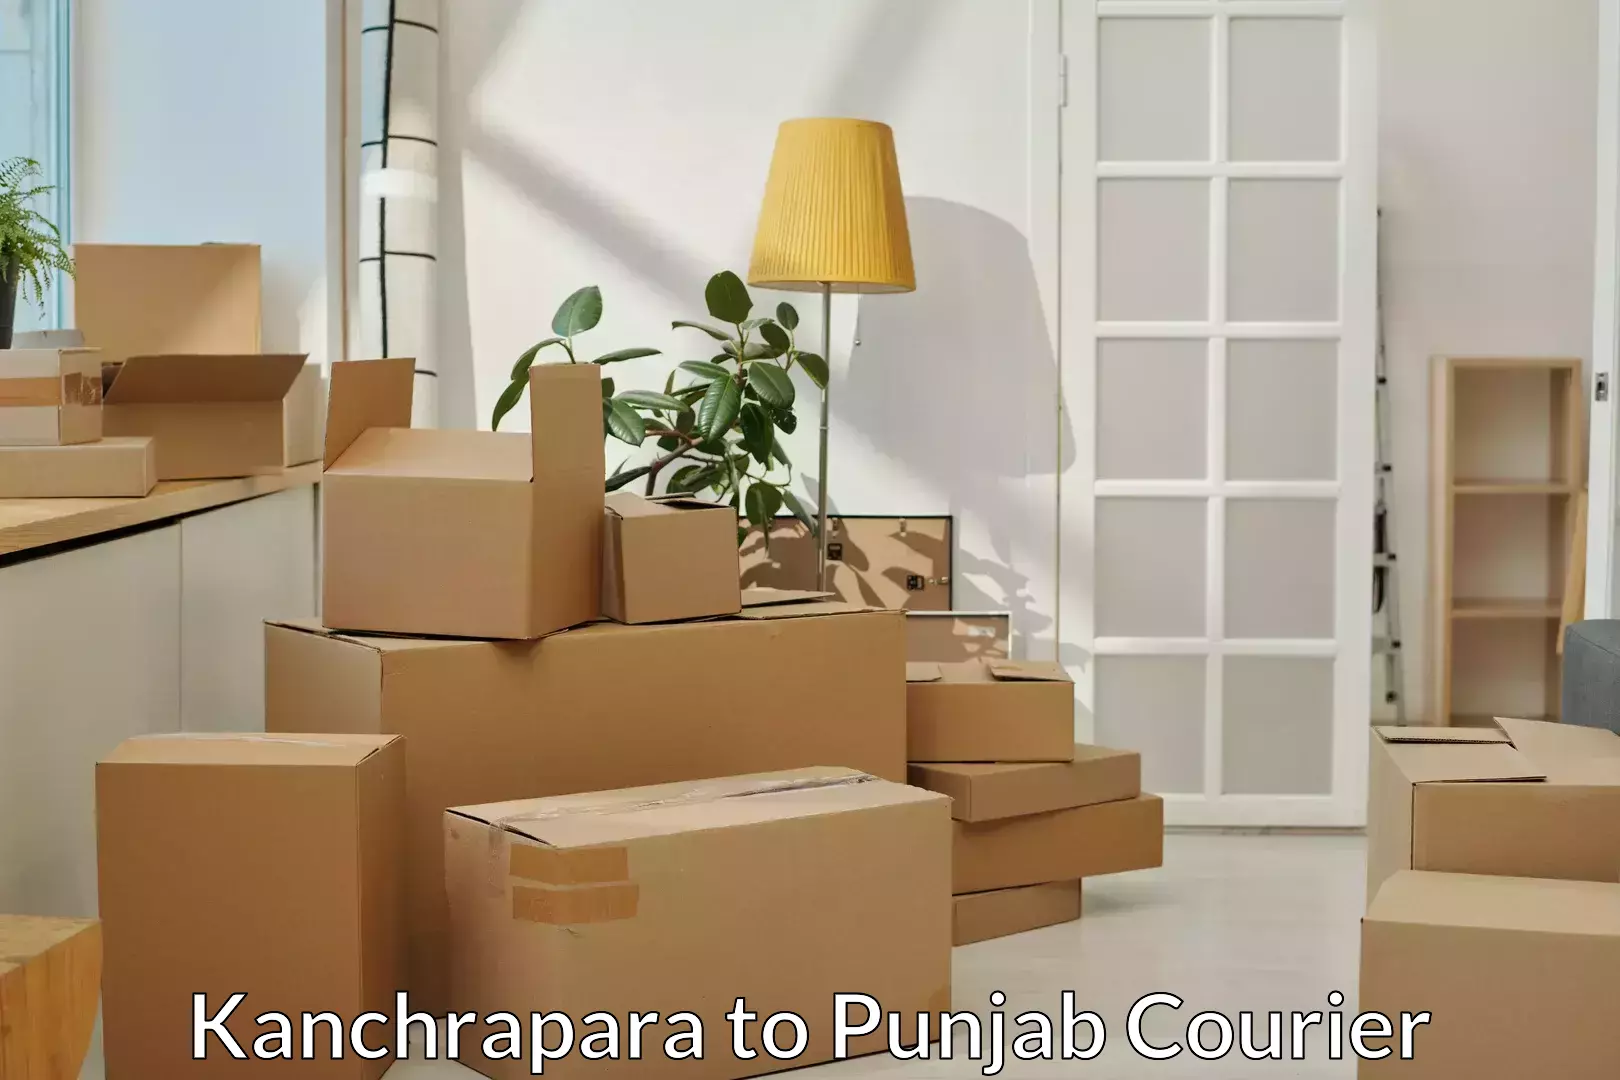 Residential moving experts Kanchrapara to Punjab